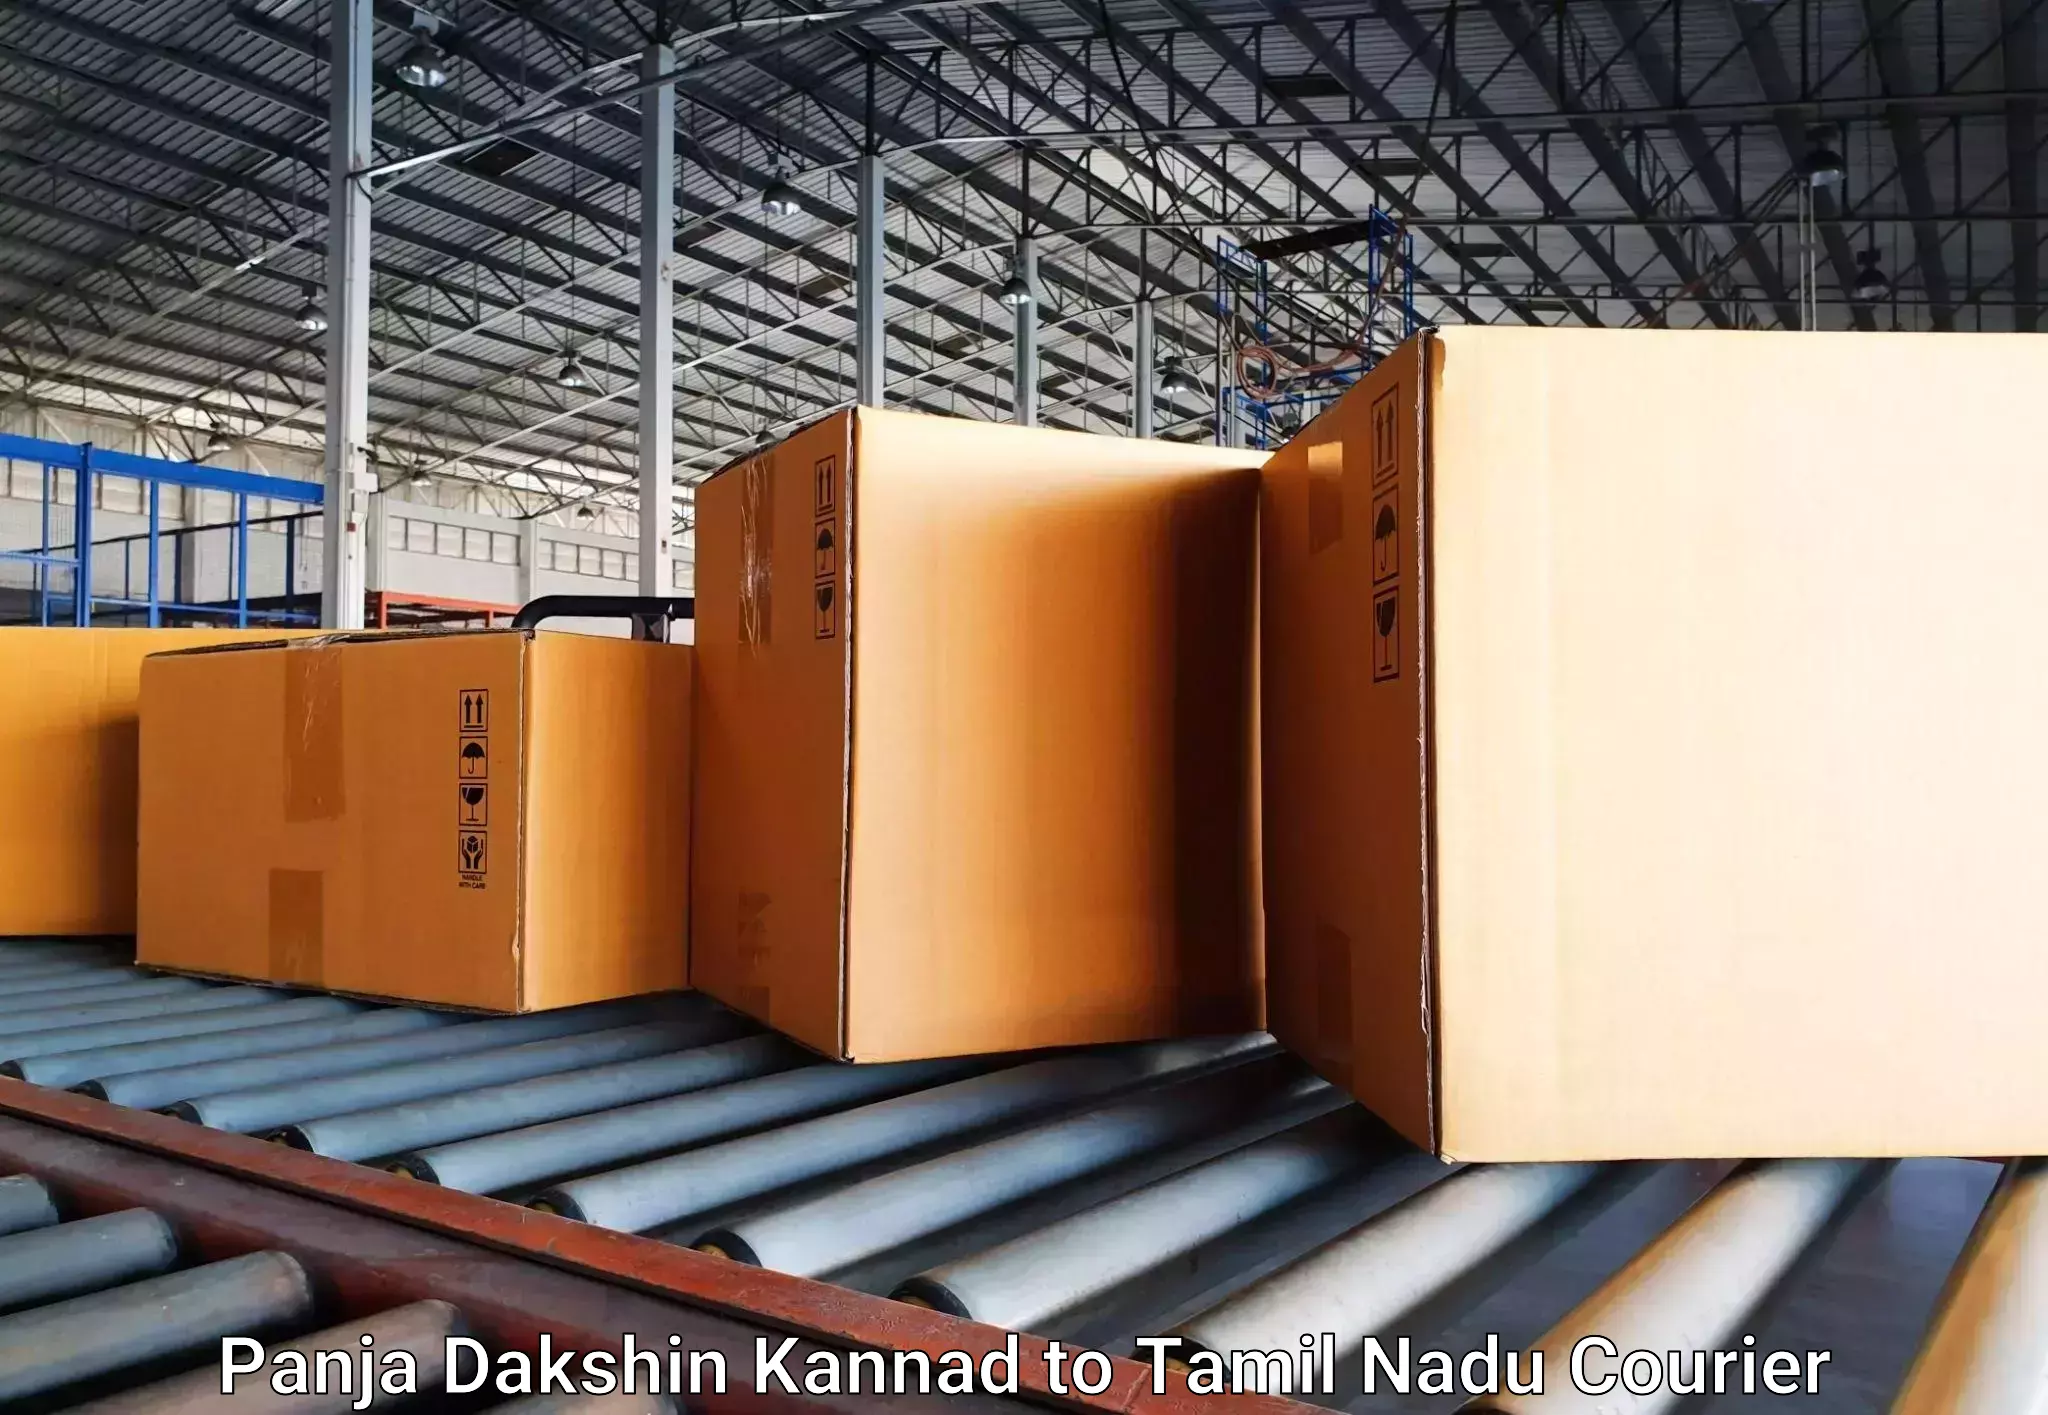 Luggage transfer service Panja Dakshin Kannad to Panruti